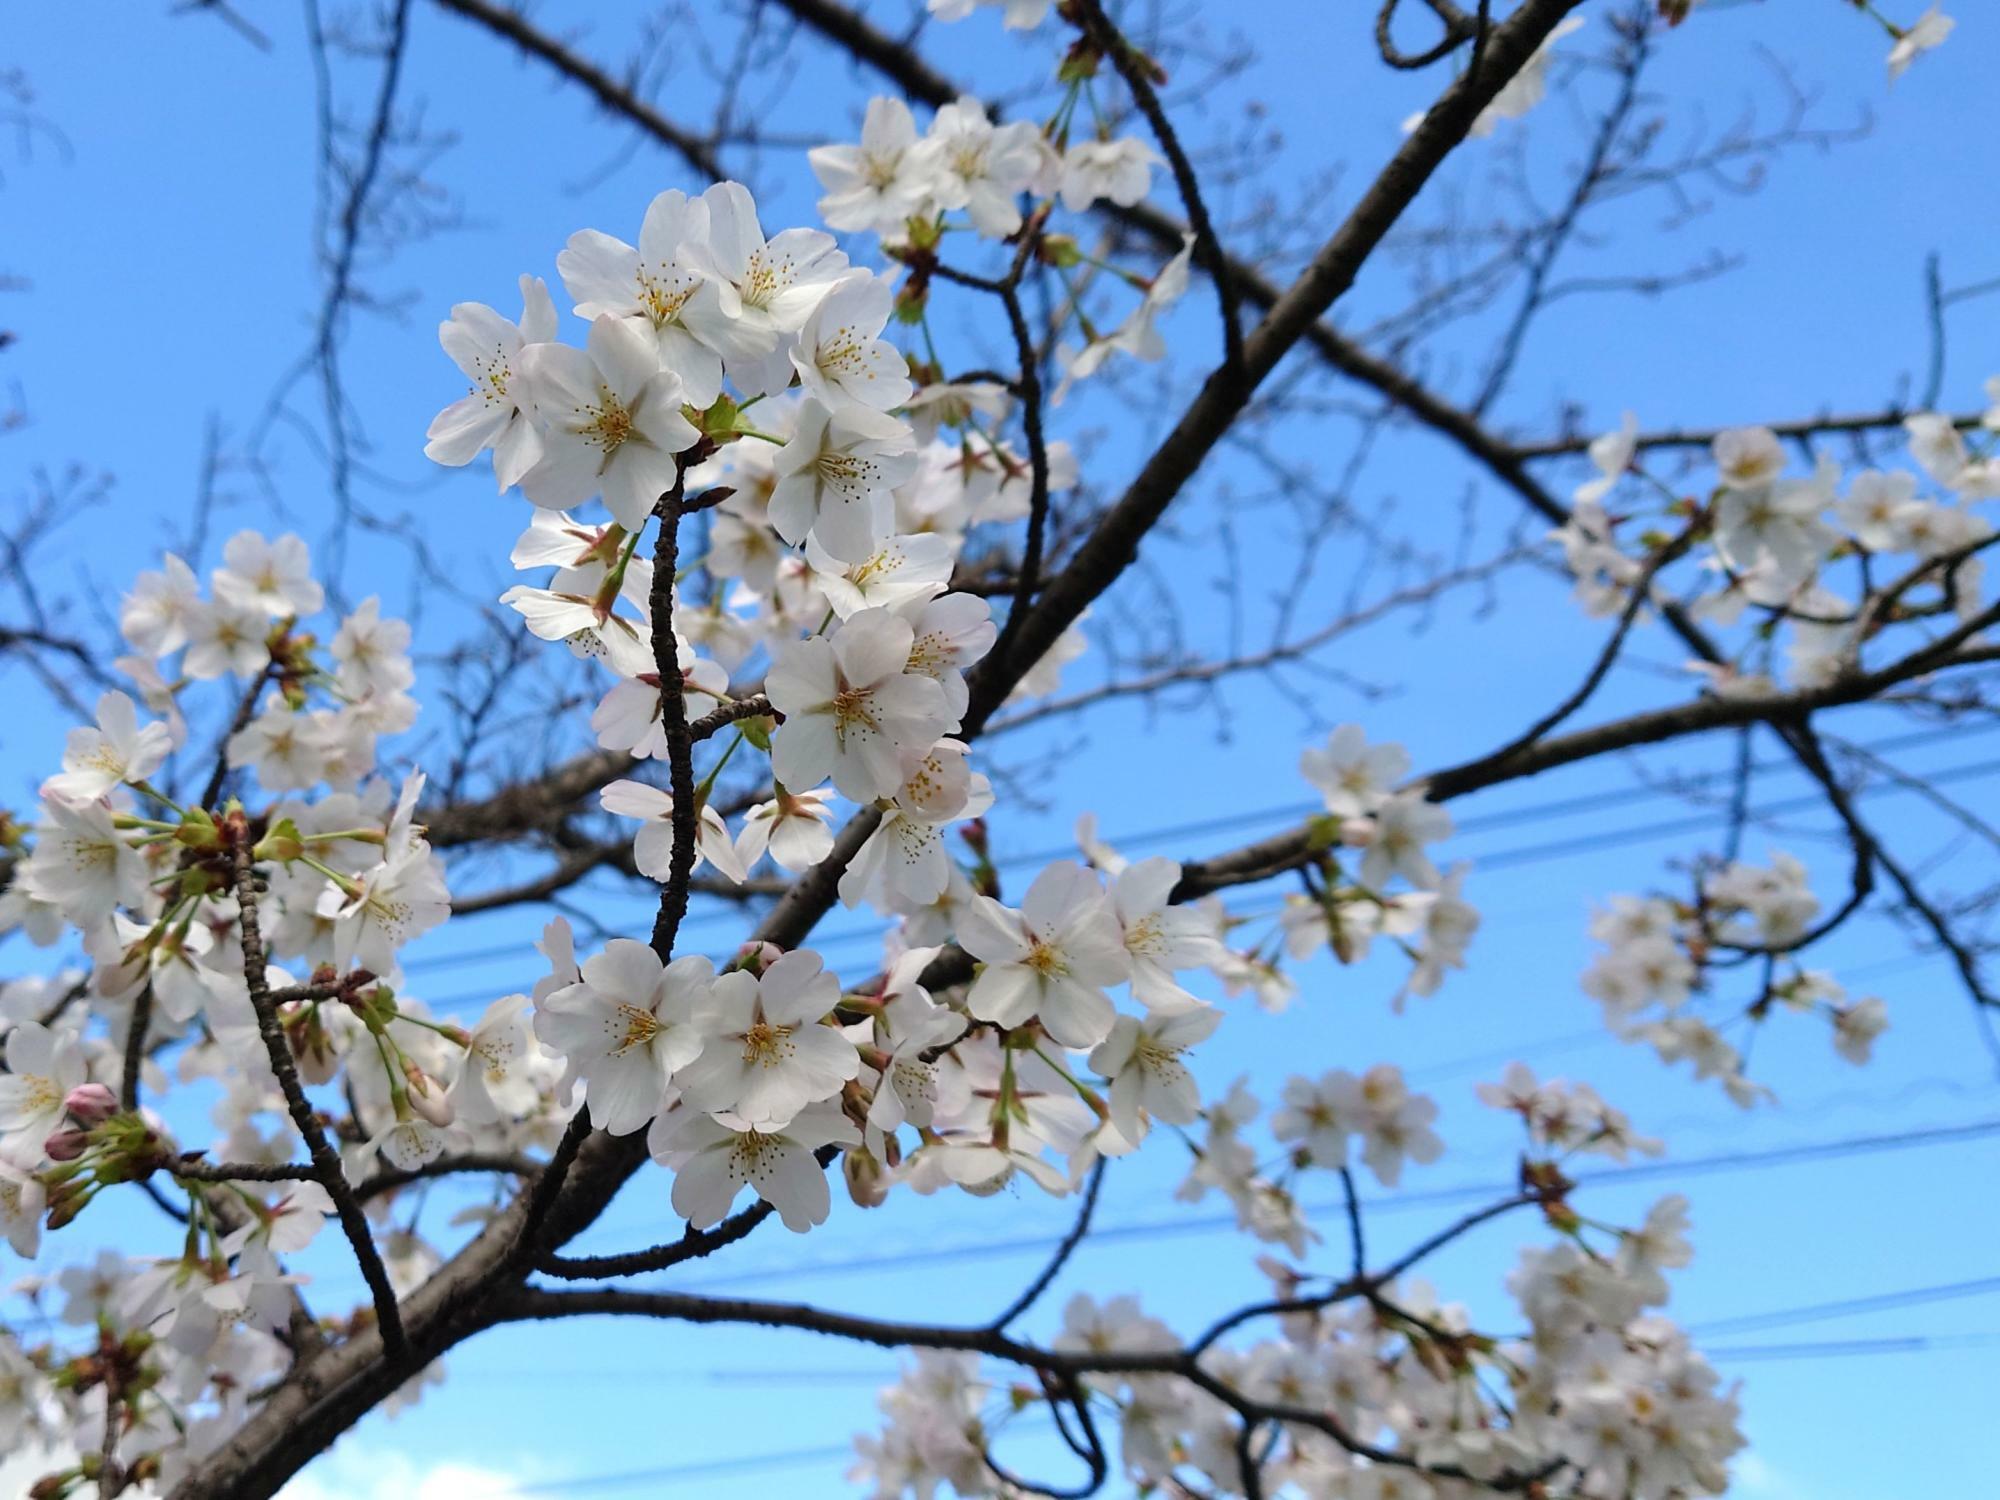 3月27日撮影時点では桜並木のほとんどが咲いていませんでしたが、いくつかの木は咲いていましたよ